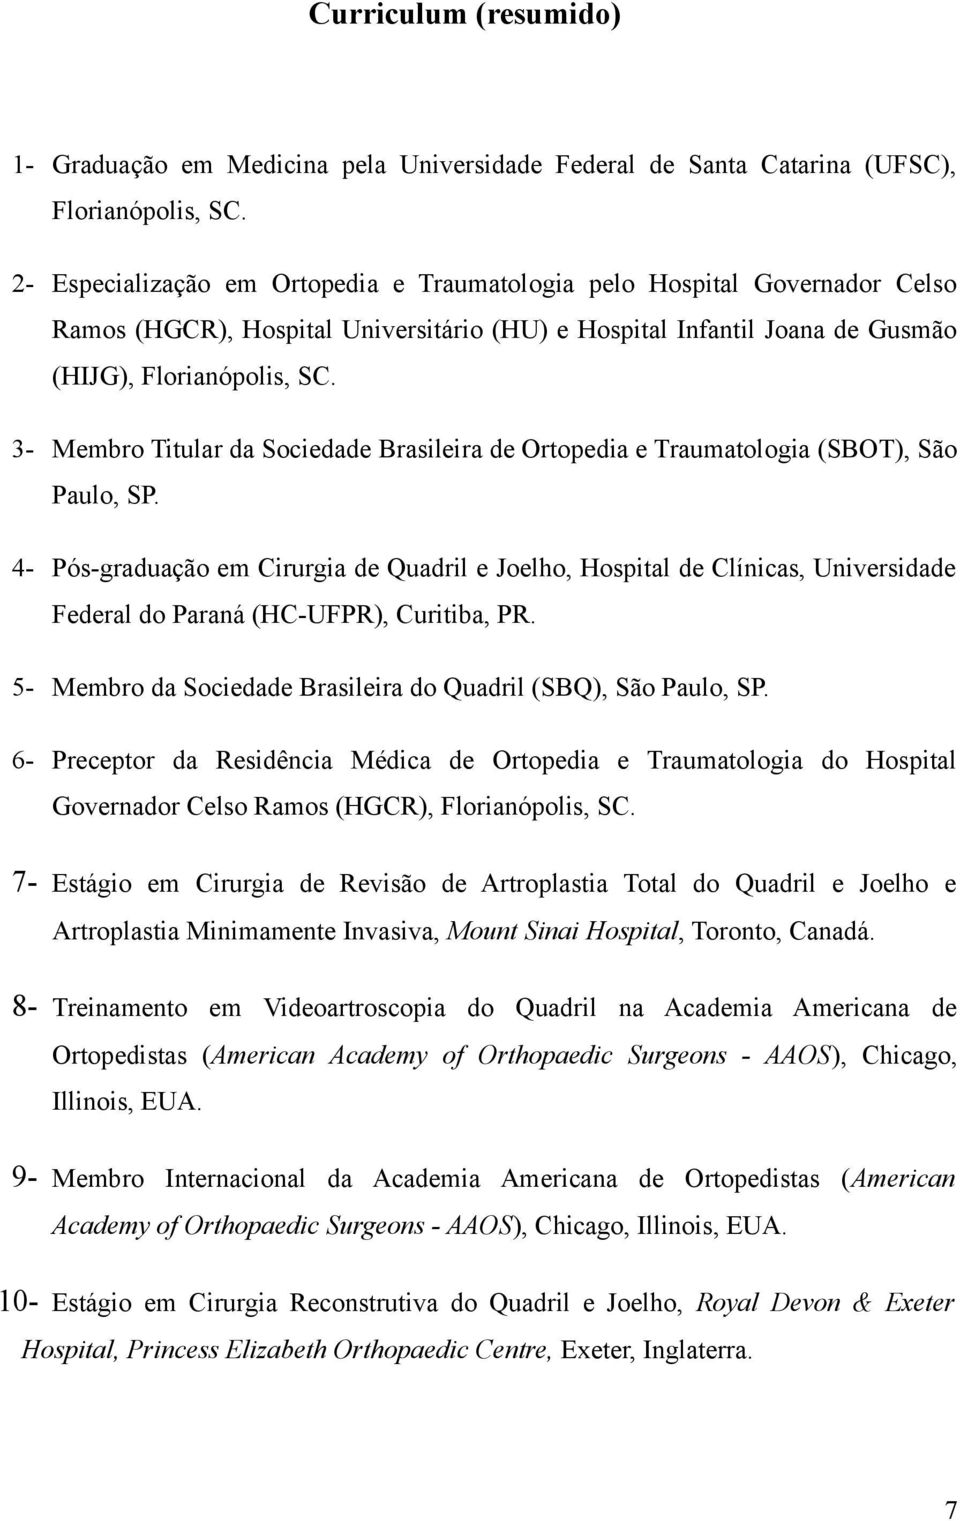 3- Membro Titular da Sociedade Brasileira de Ortopedia e Traumatologia (SBOT), São Paulo, SP.